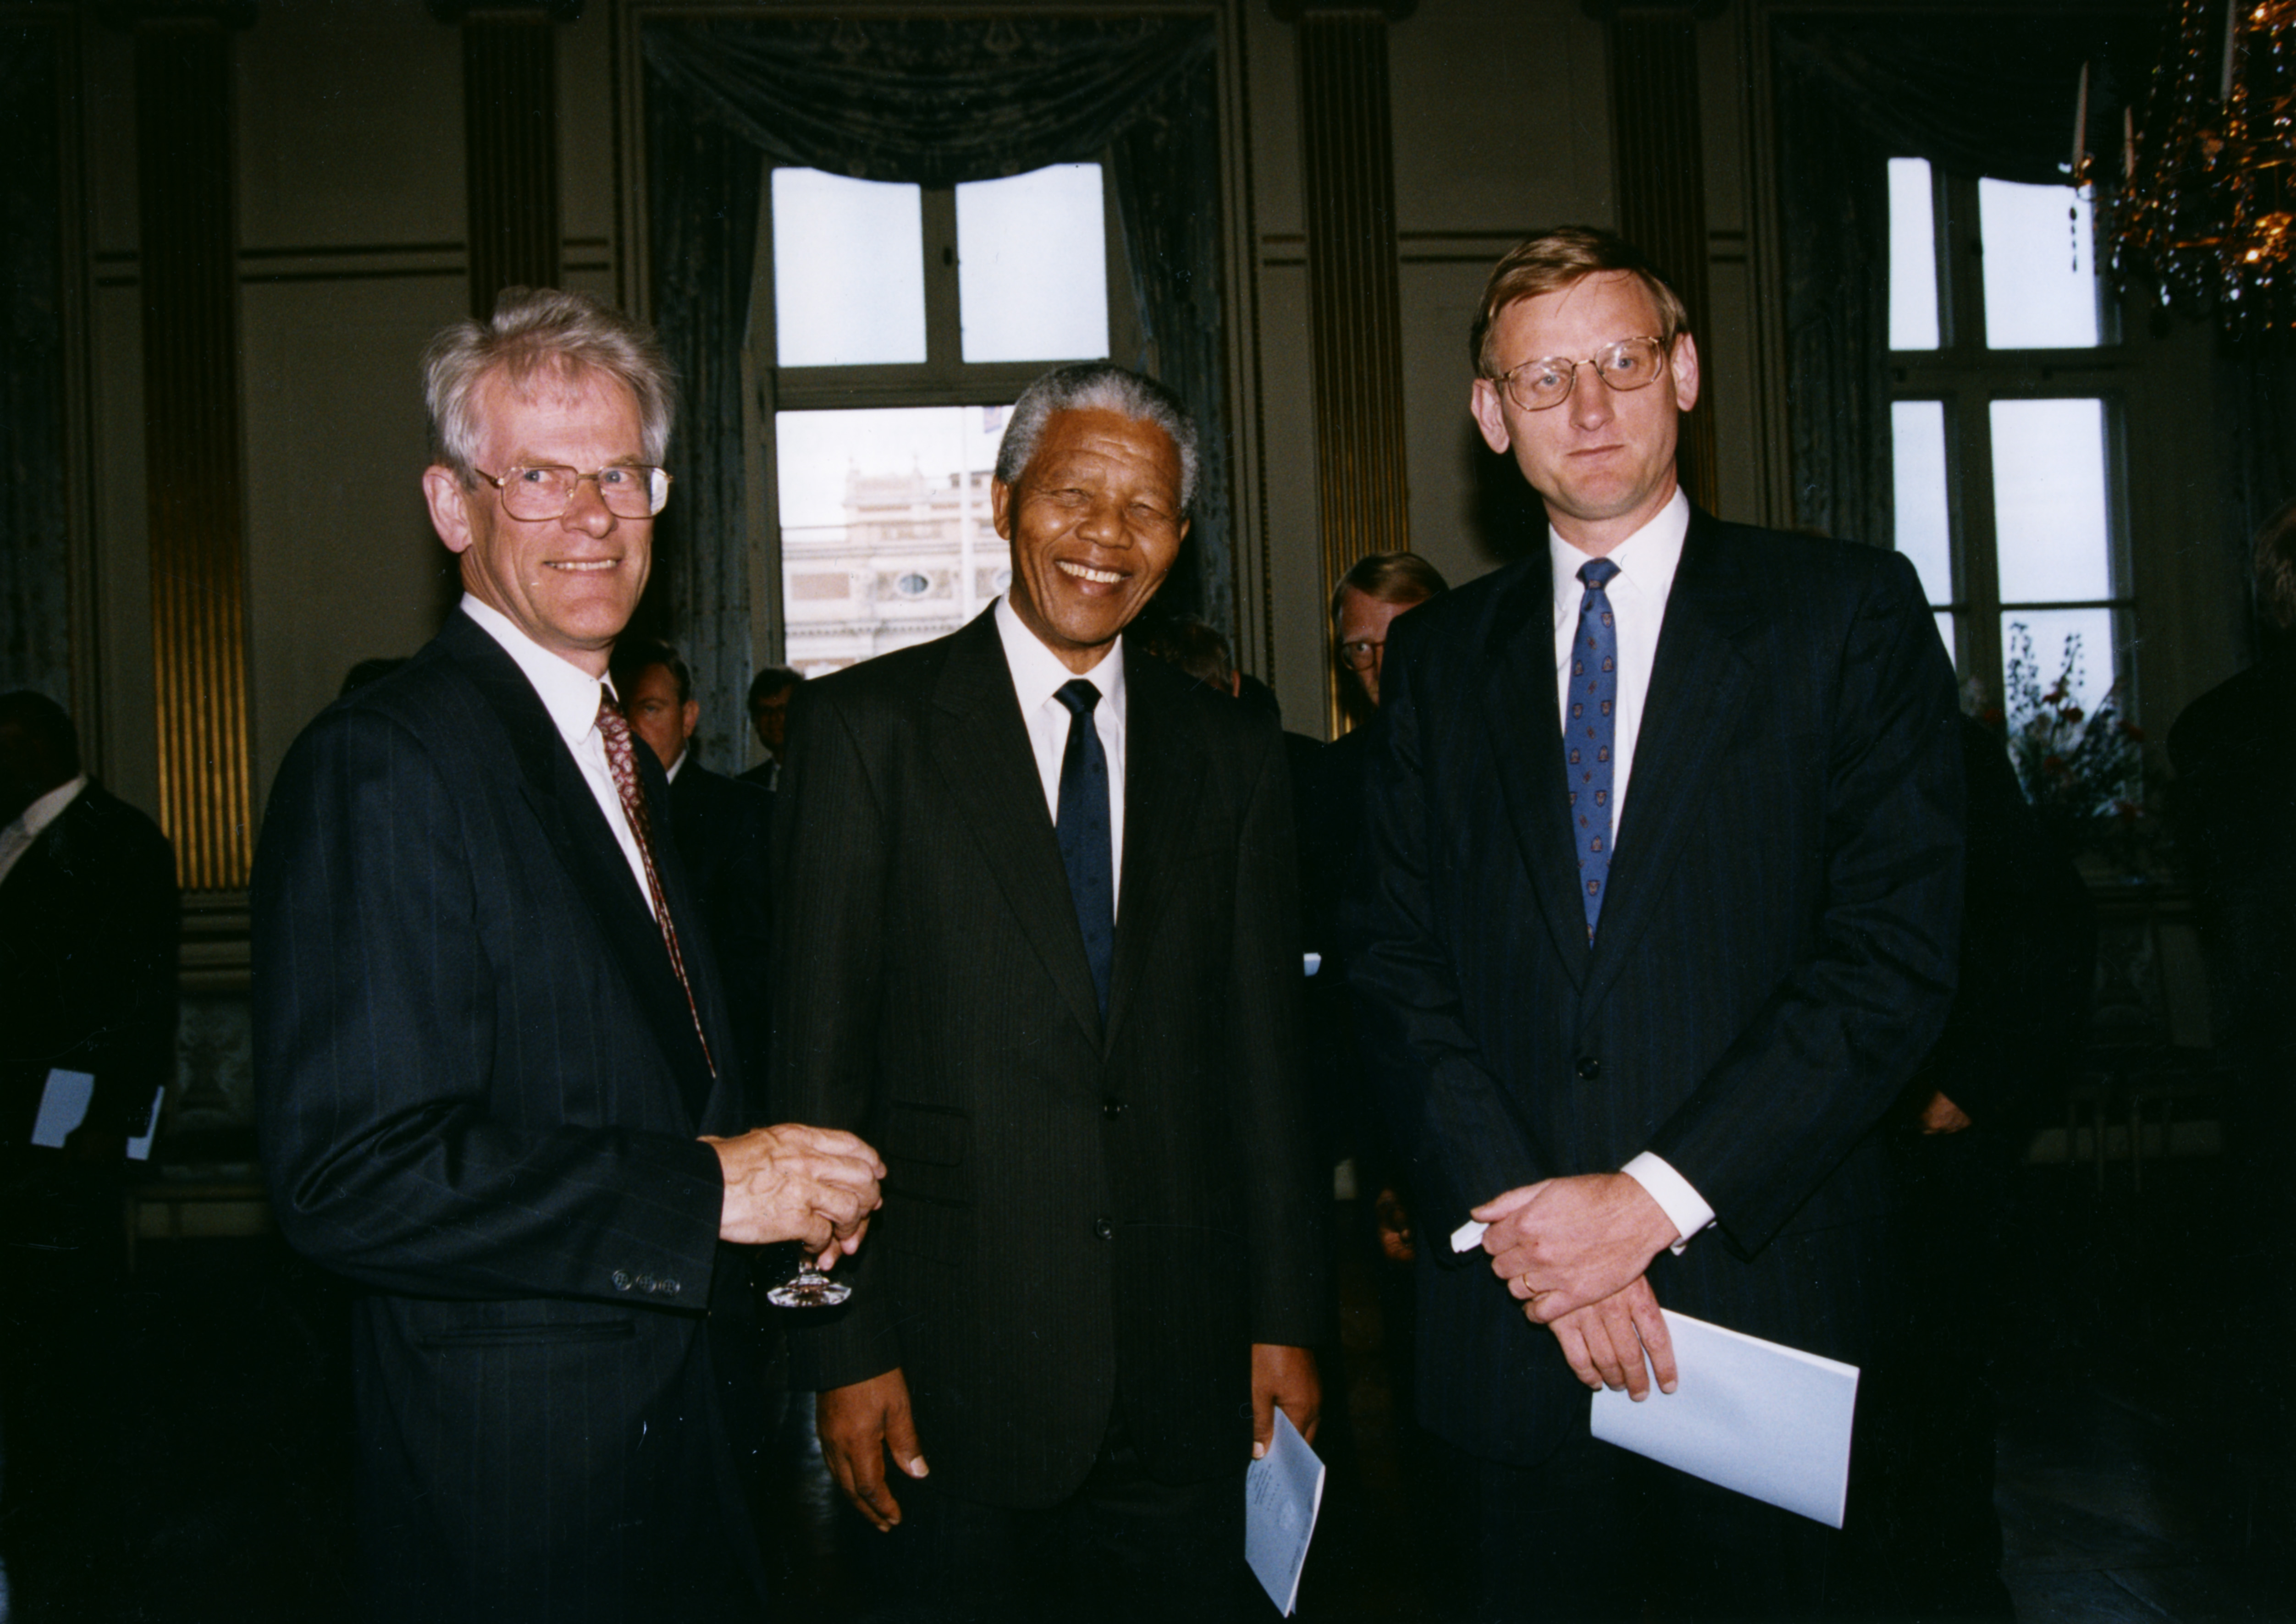 På statsbesök i Sverige 1992 med dåvarande statsministern Carl Bildt och oppositionsledaren Ingvar Carlsson.